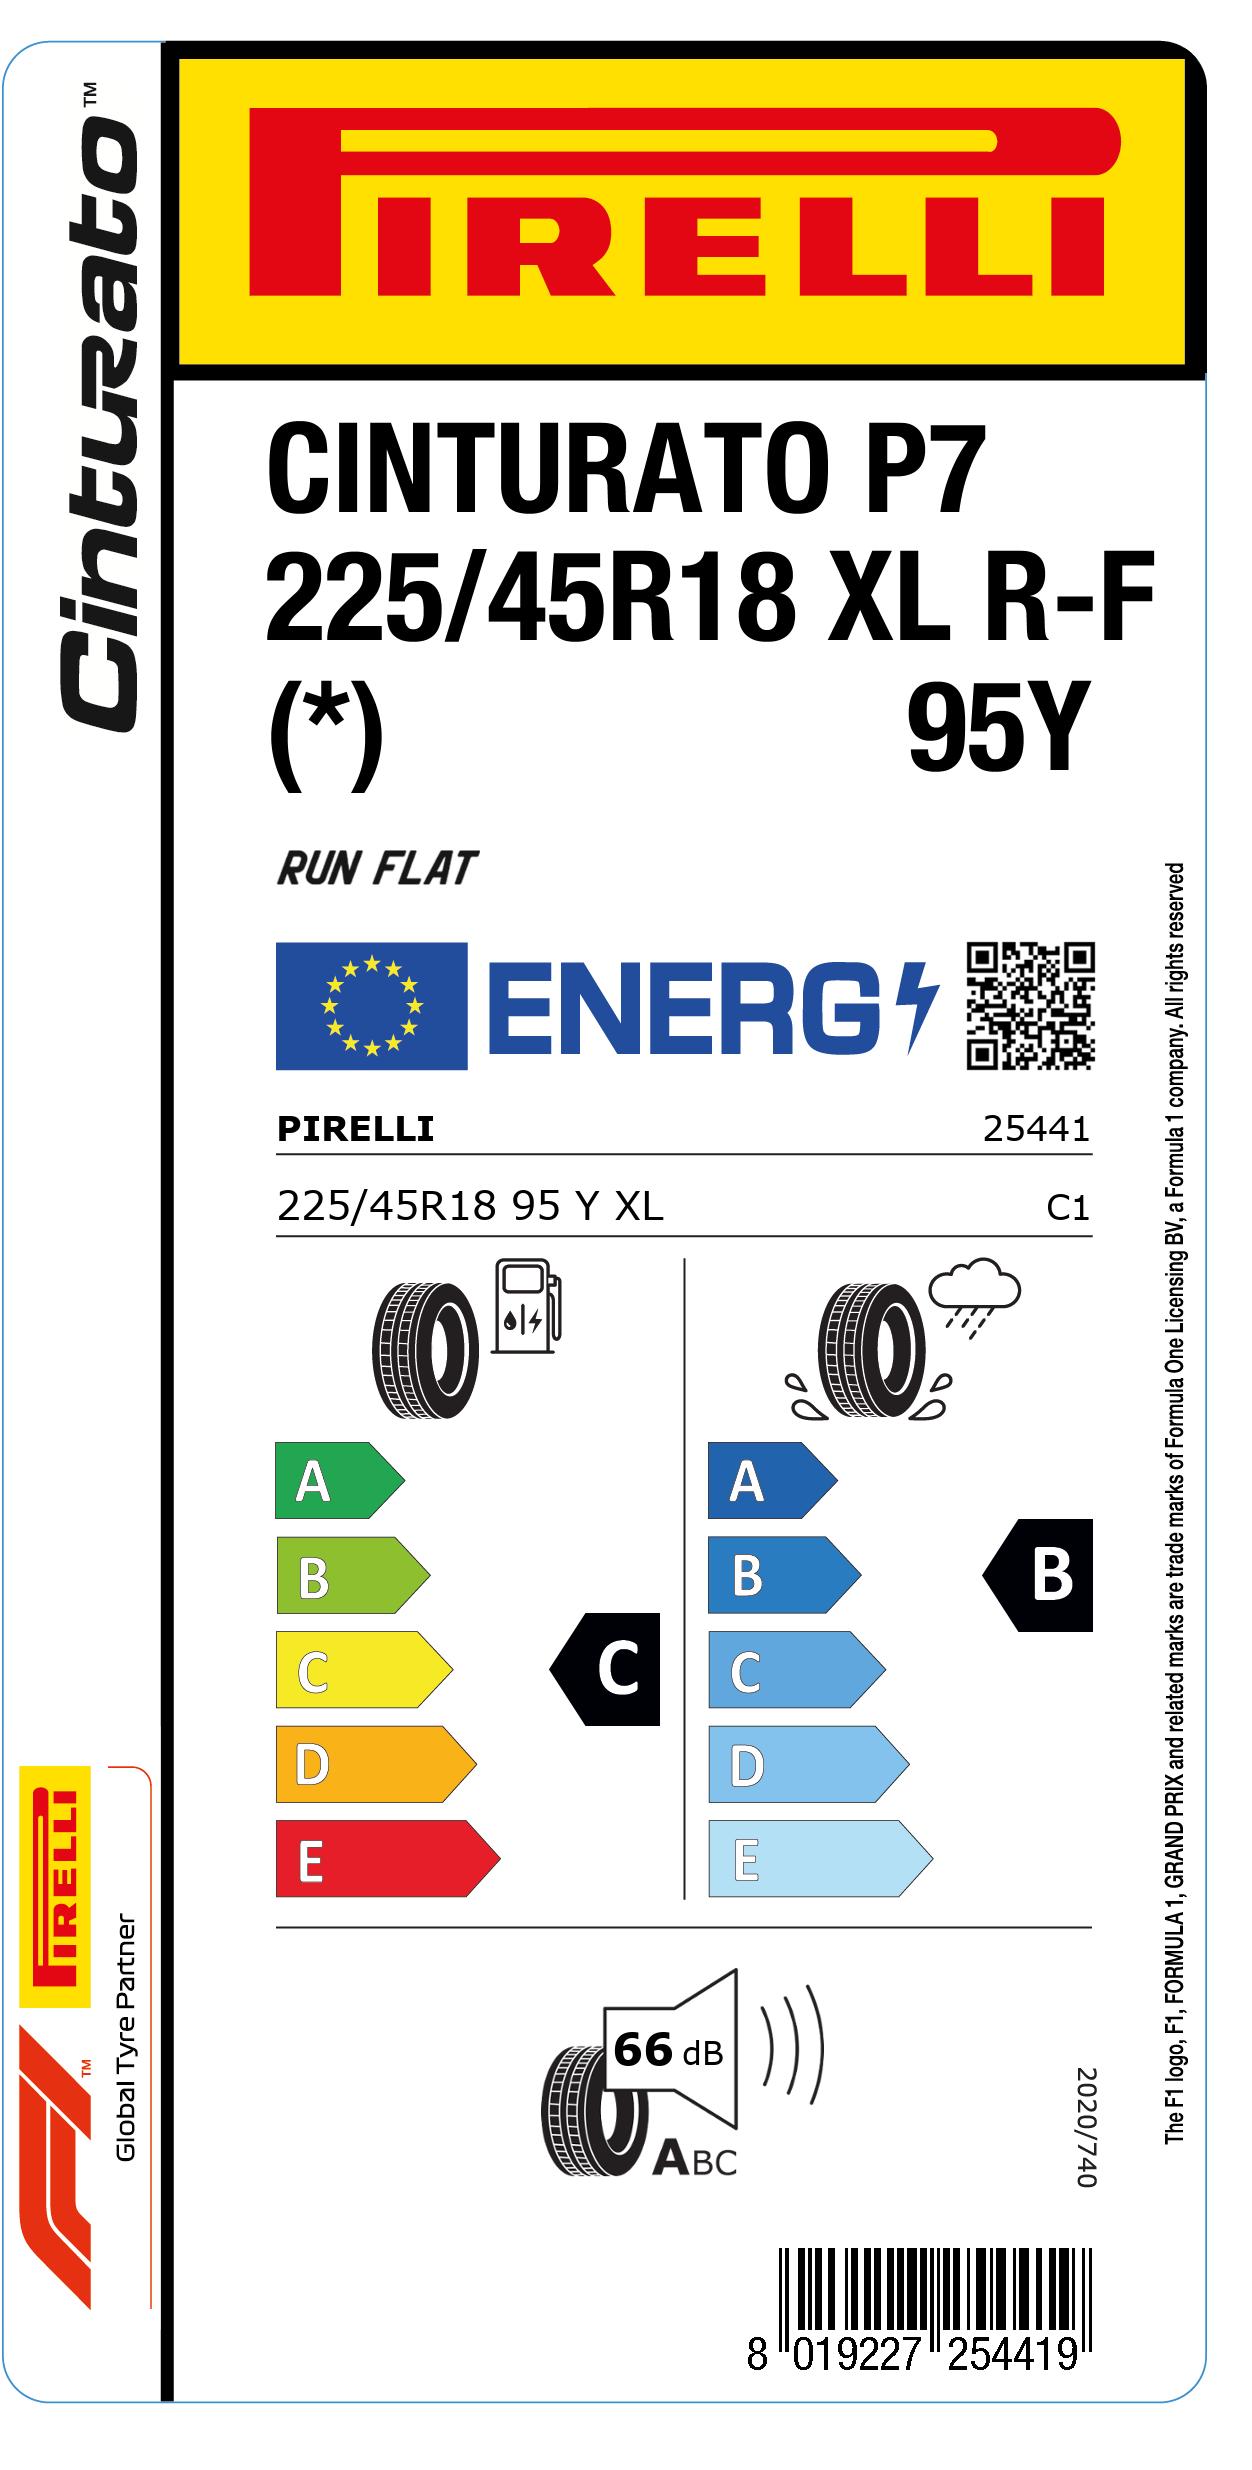 Energimärkning